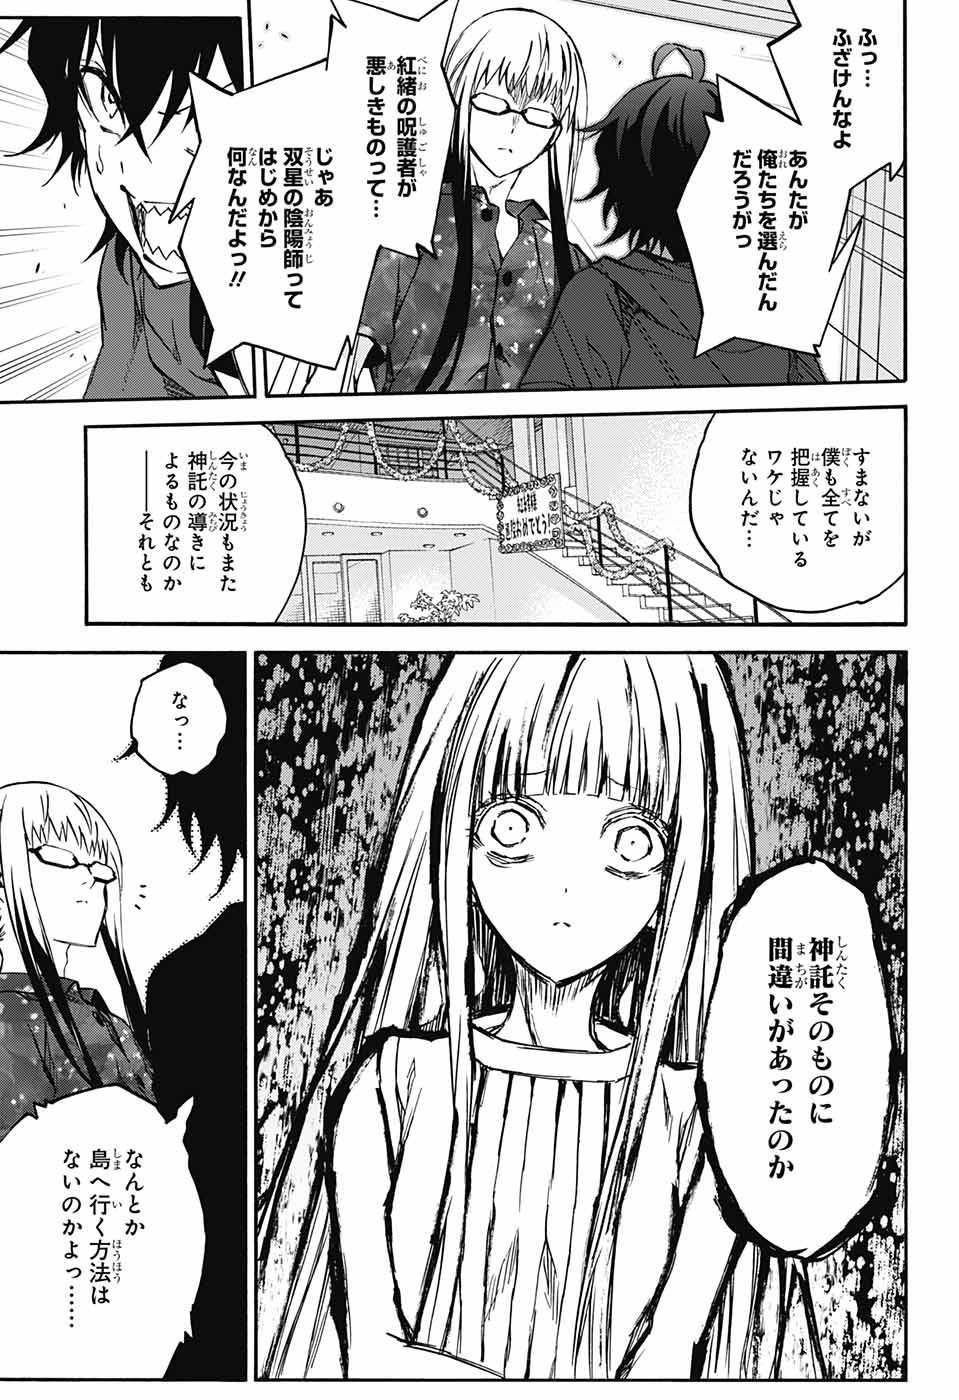 Sousei no Onmyouji - Chapter 33 - Page 3